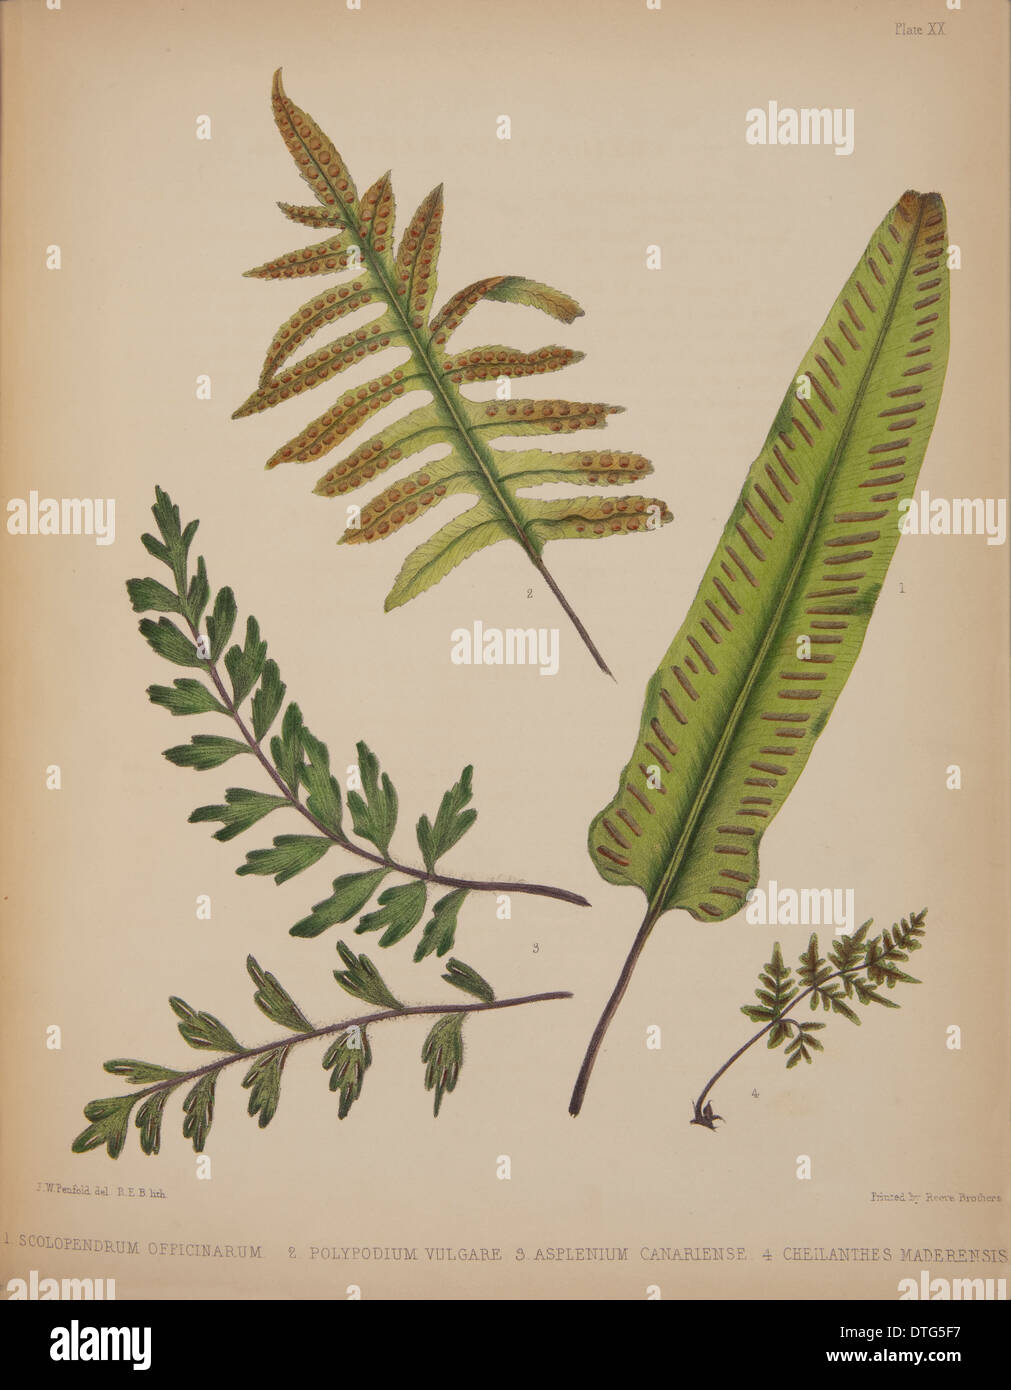 Scolopendrium officinarum, Polypodium valgare, Asplenium canariense, Cheilanthes Stock Photo